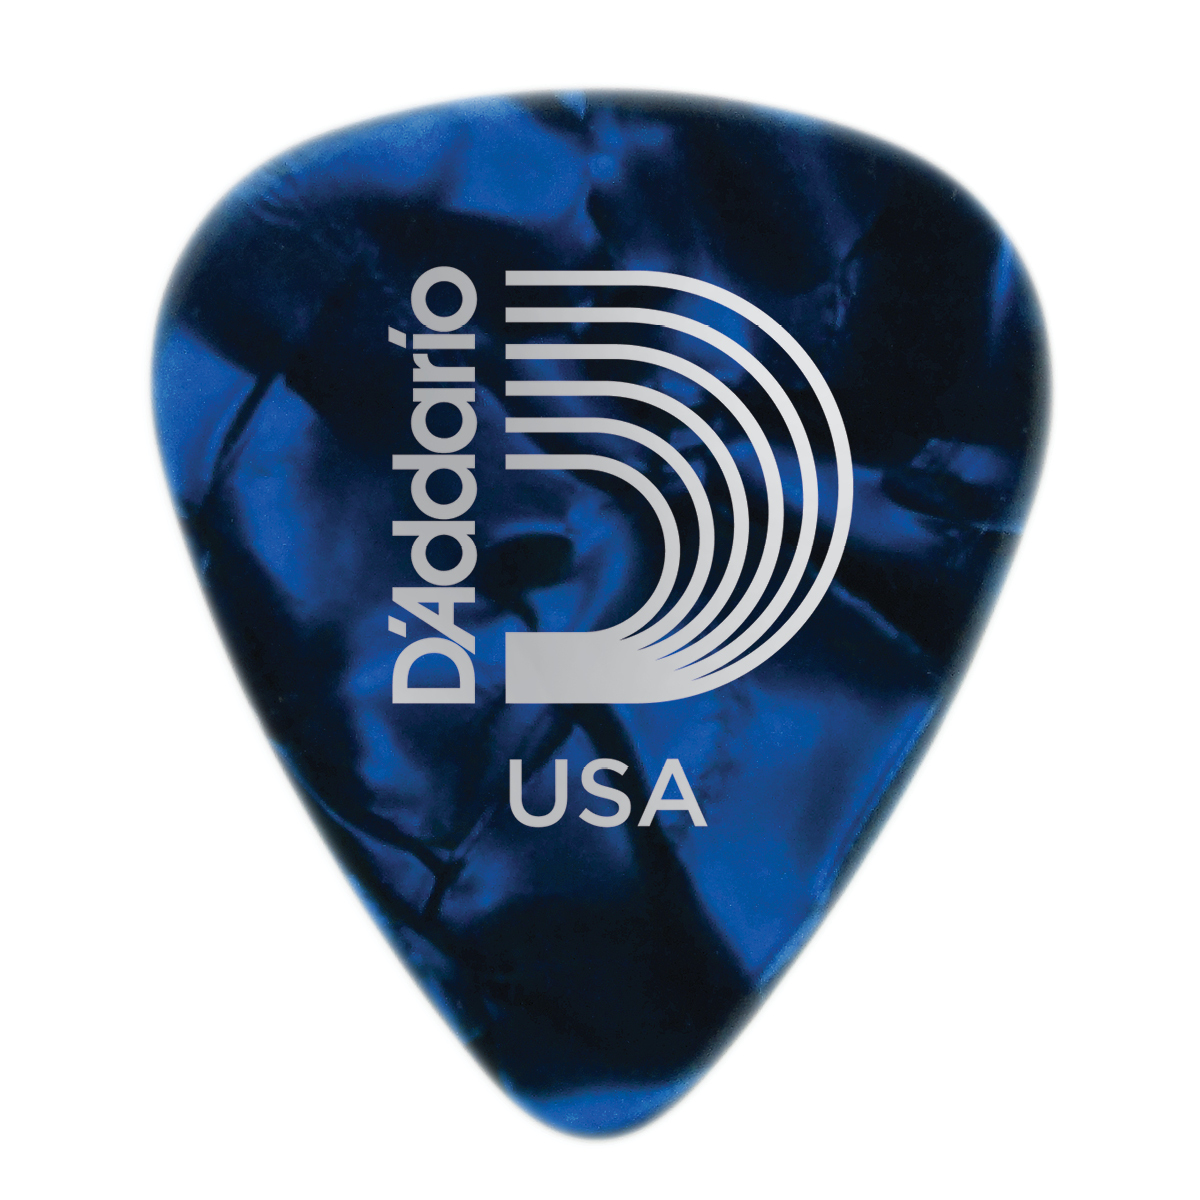 D'Addario Blue Pearl Celluloid Guitar Pick,  Medium